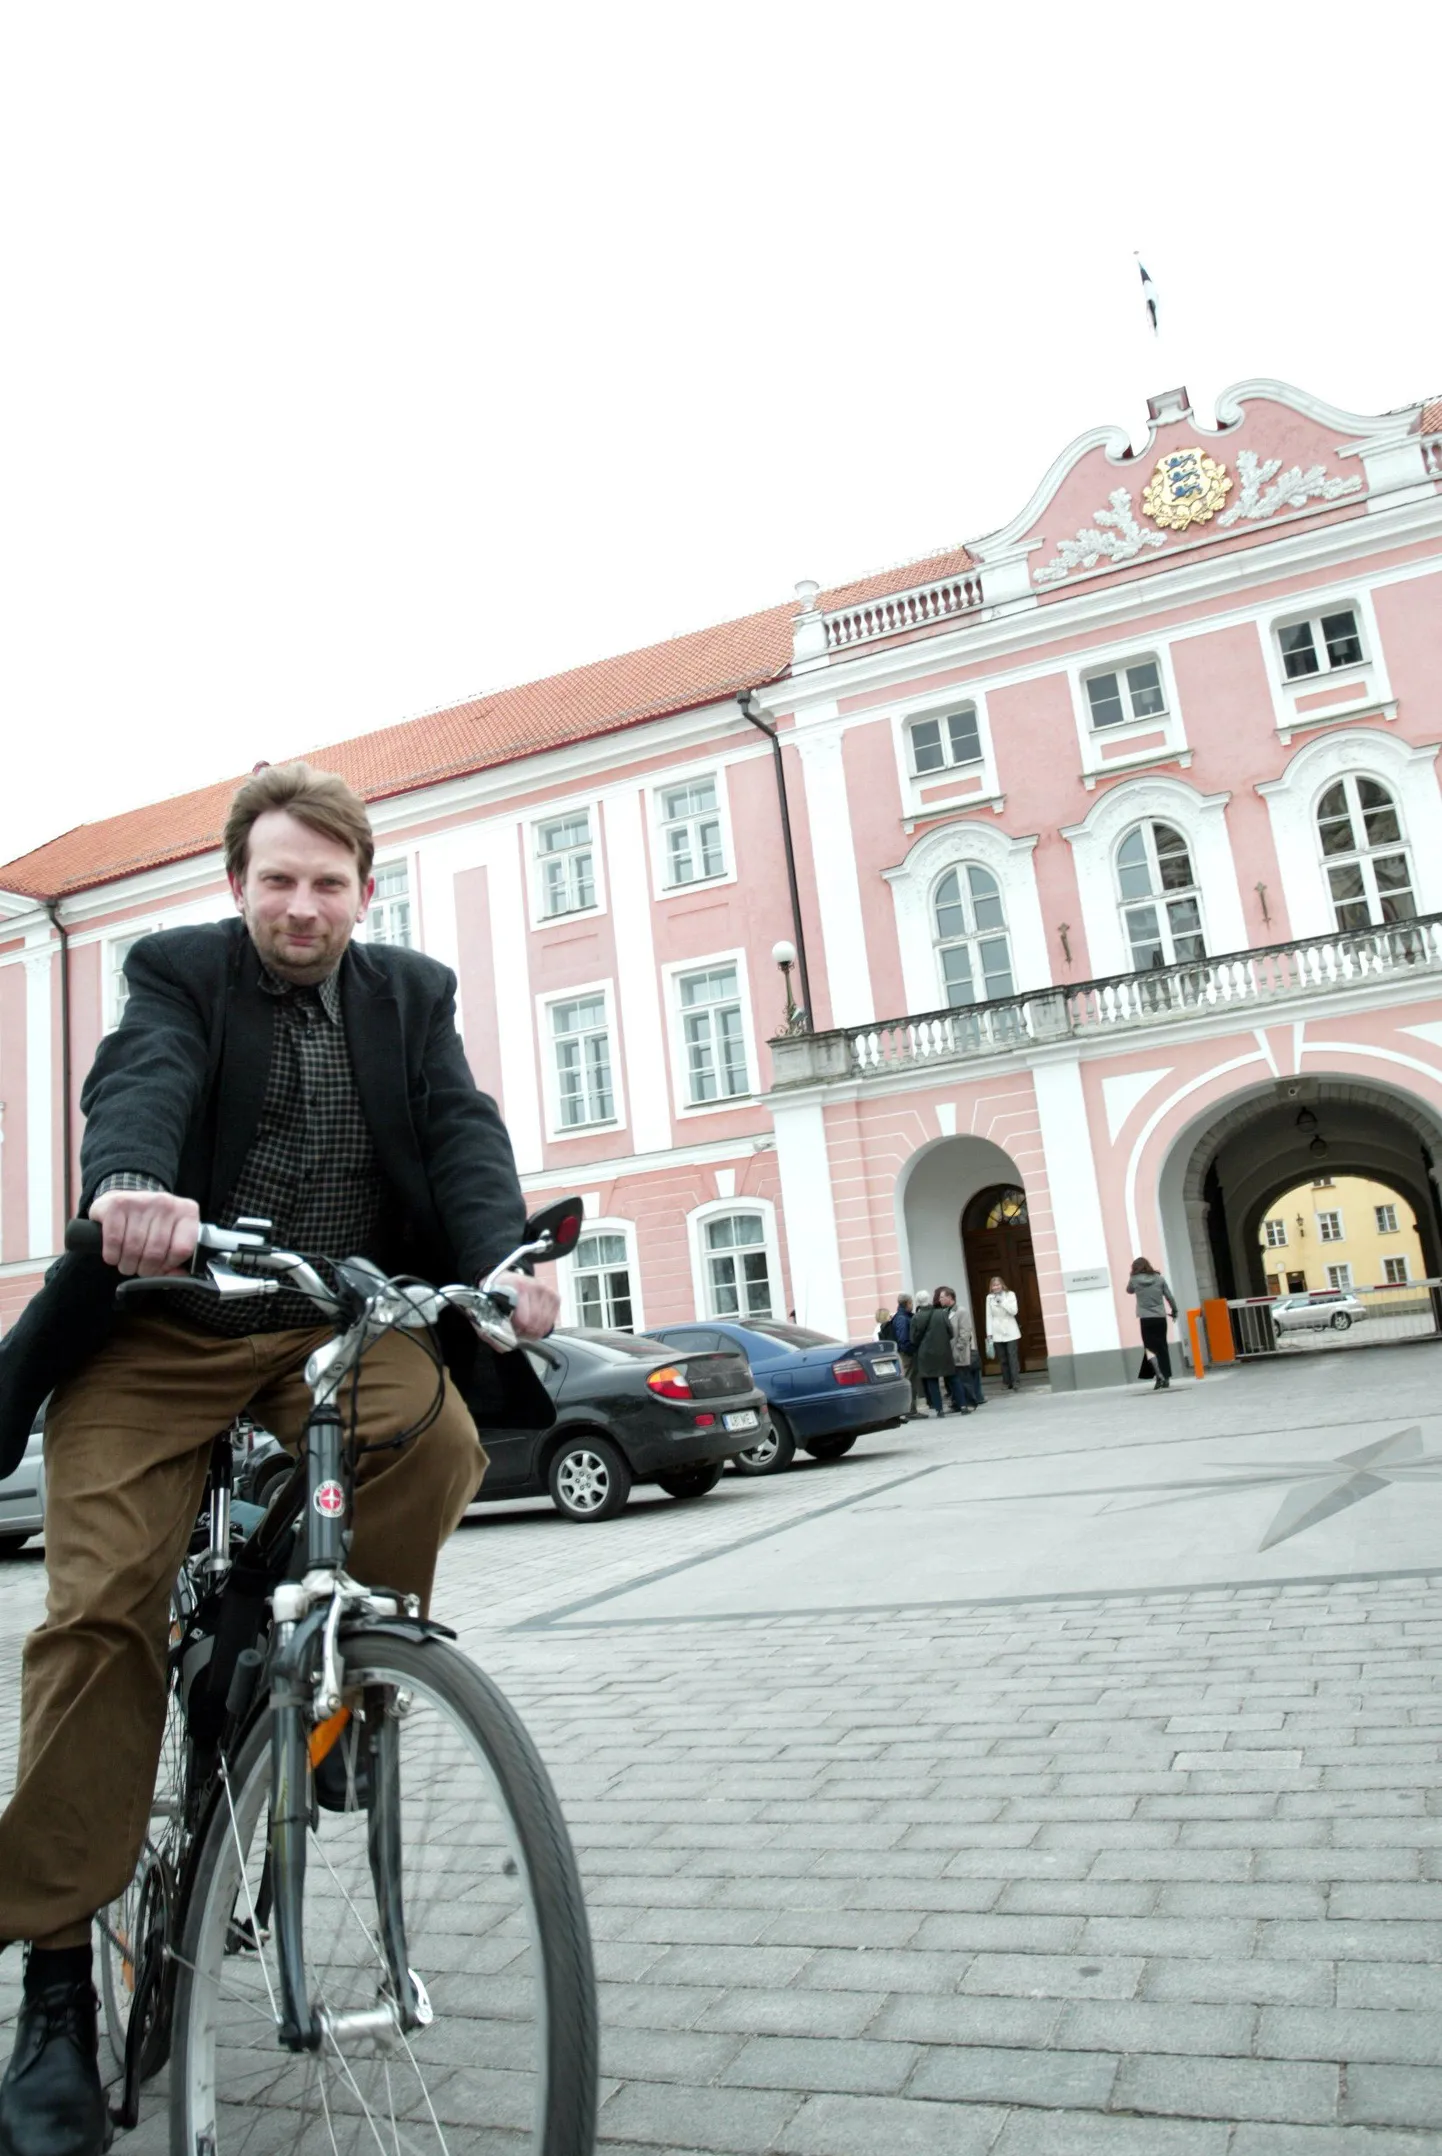 Одного из лидеров Партии зеленых Марека Страндберга можно часто видеть в Таллинне на велосипеде.